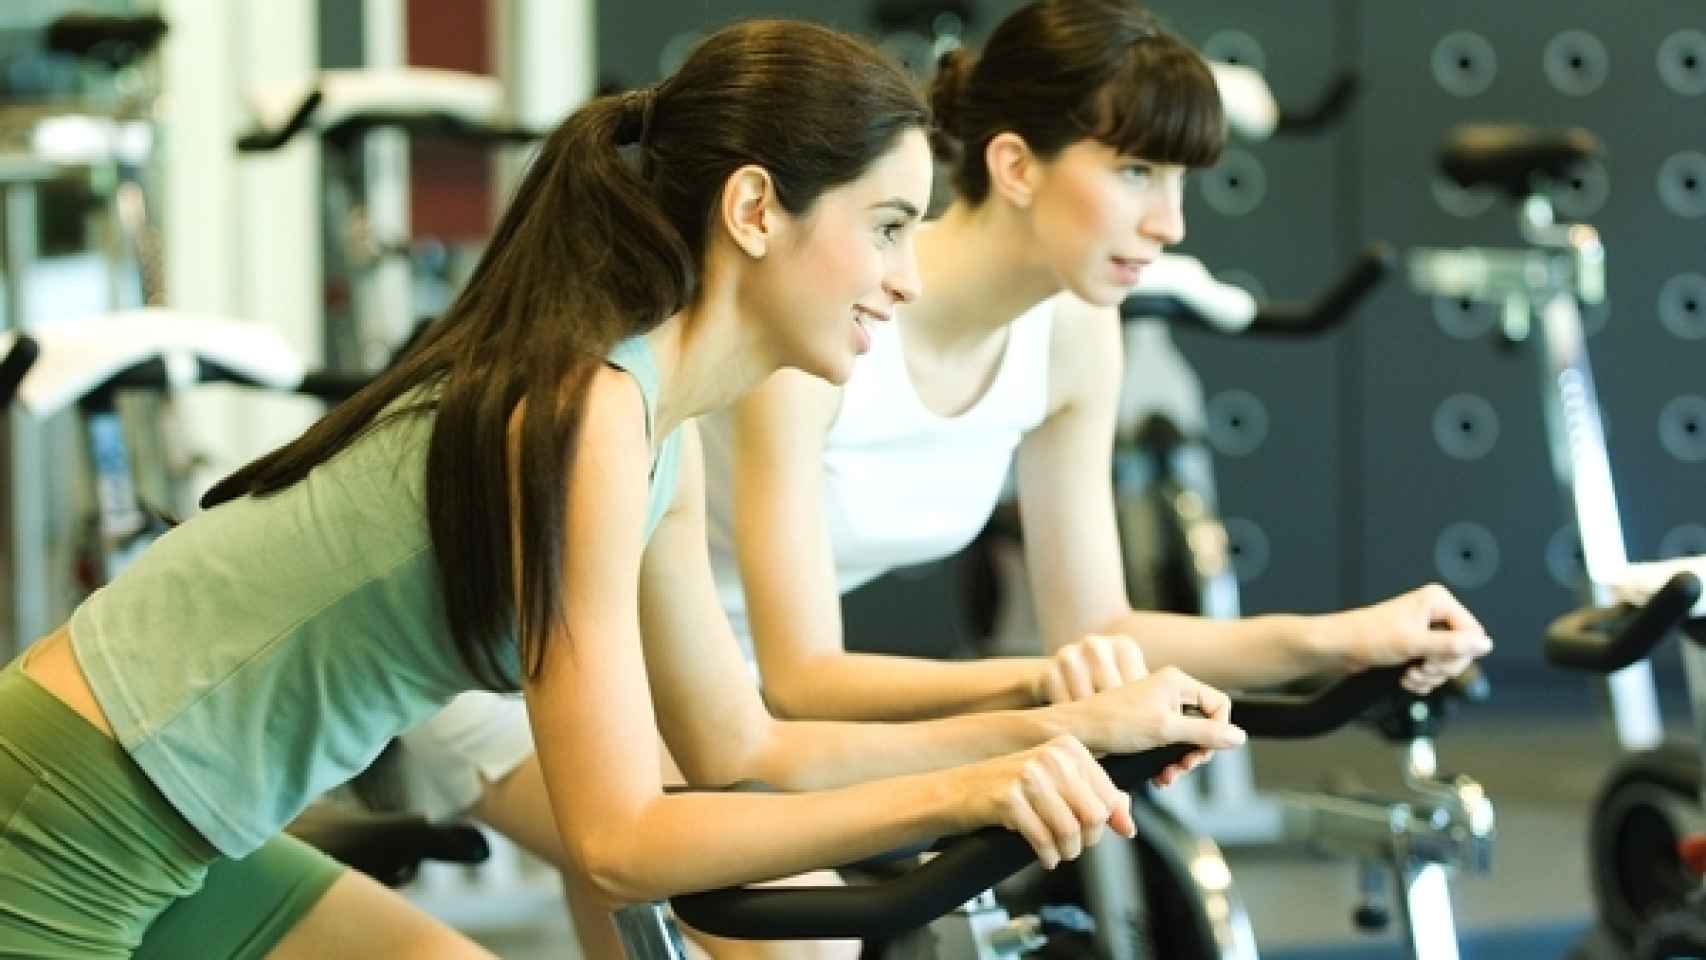 Dos mujeres hacen ejercicio en bicicletas estáticas.